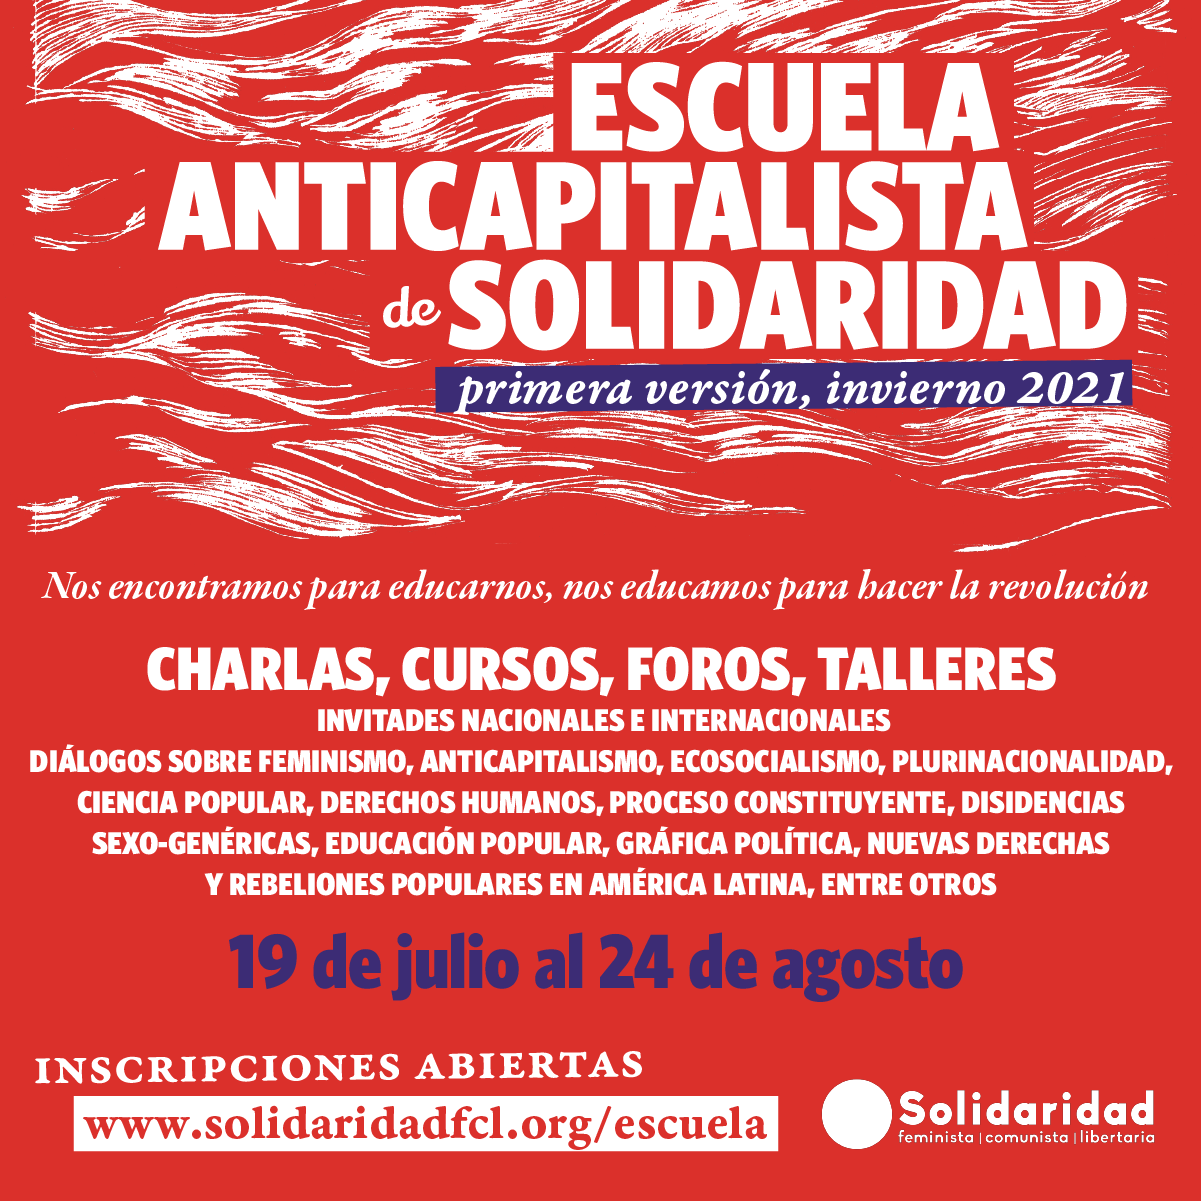 Hasta el 24 de agosto continúa la ‘Escuela Anticapitalista’ del movimiento ‘Solidaridad’